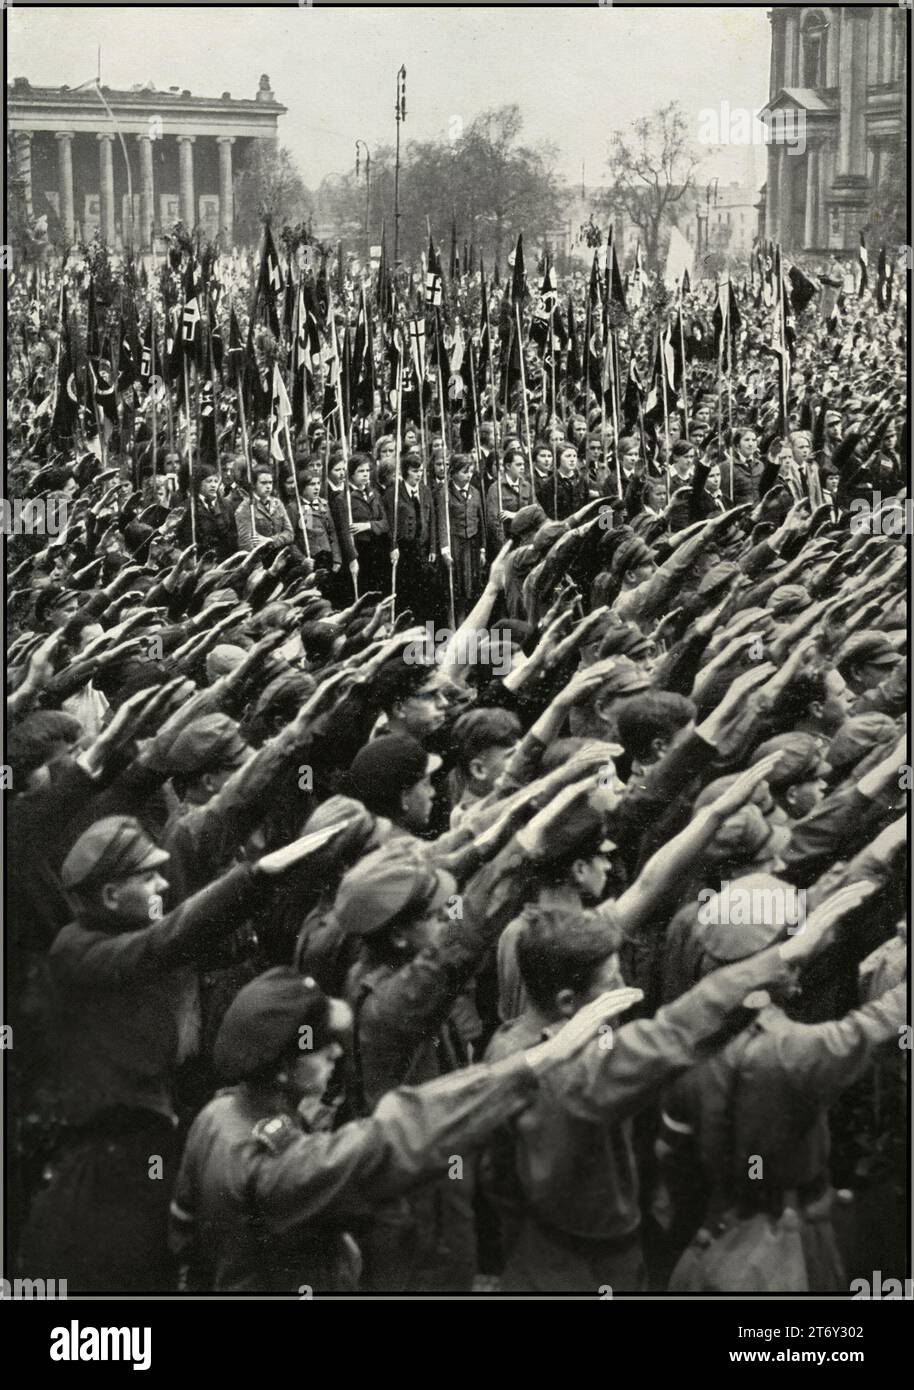 Rassemblement de la jeunesse de l'Allemagne nazie des années 1930 dans le jardin de plaisance de Berlin, avec drapeau swastika portant la Ligue des filles allemandes BDM et HitlerJugend Hitler Youth donnant au parti nazi Heil Hitler salut à Fuhrer Adolf Hitler. « L'Allemagne réveille » la montée du nazisme en Allemagne des années 1930 Banque D'Images